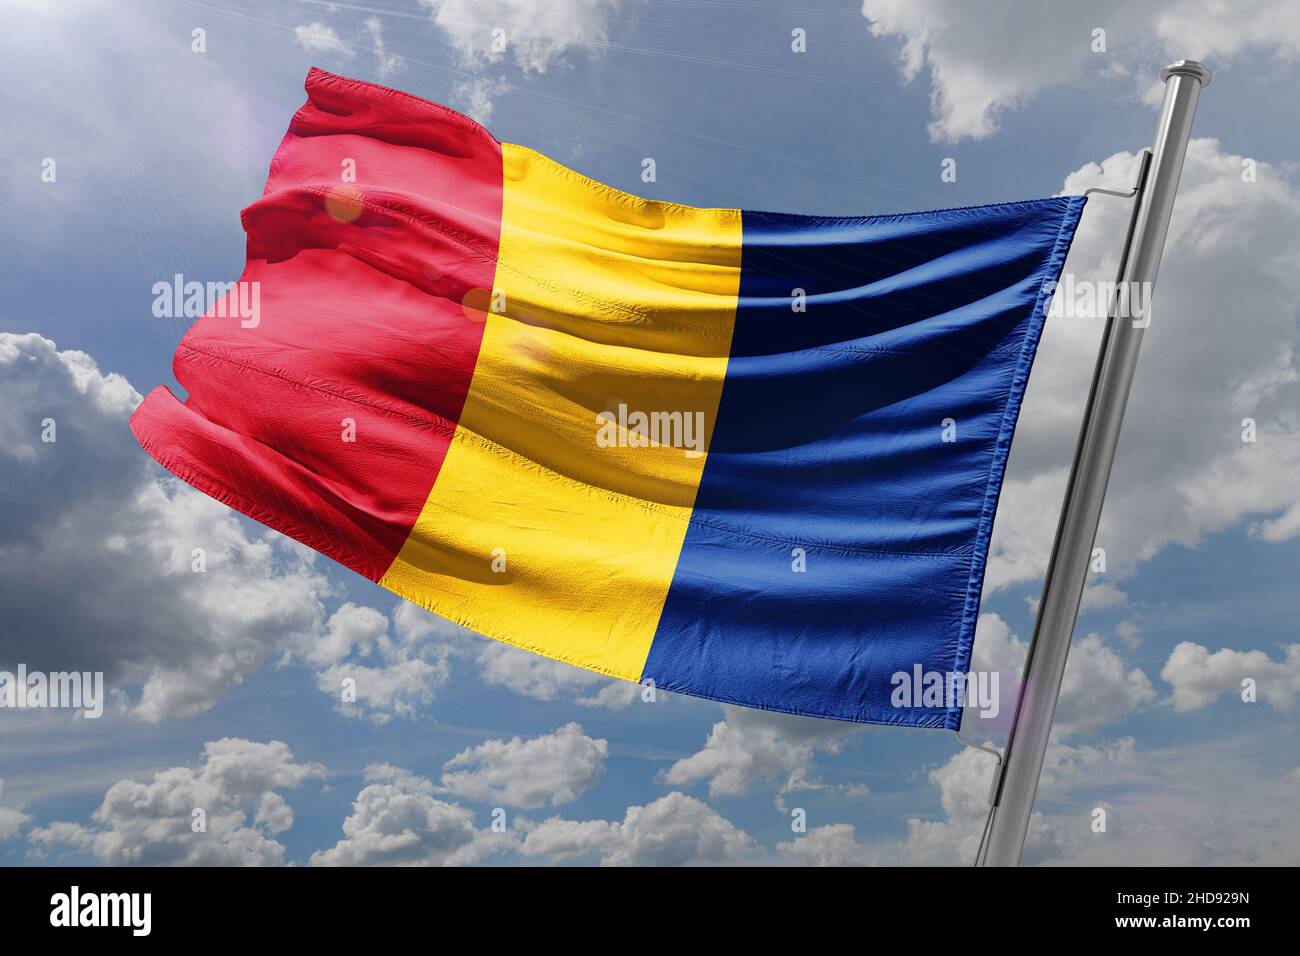 La bandiera nazionale della Romania (rumena: Drapelul României) è un tricolore. Foto Stock